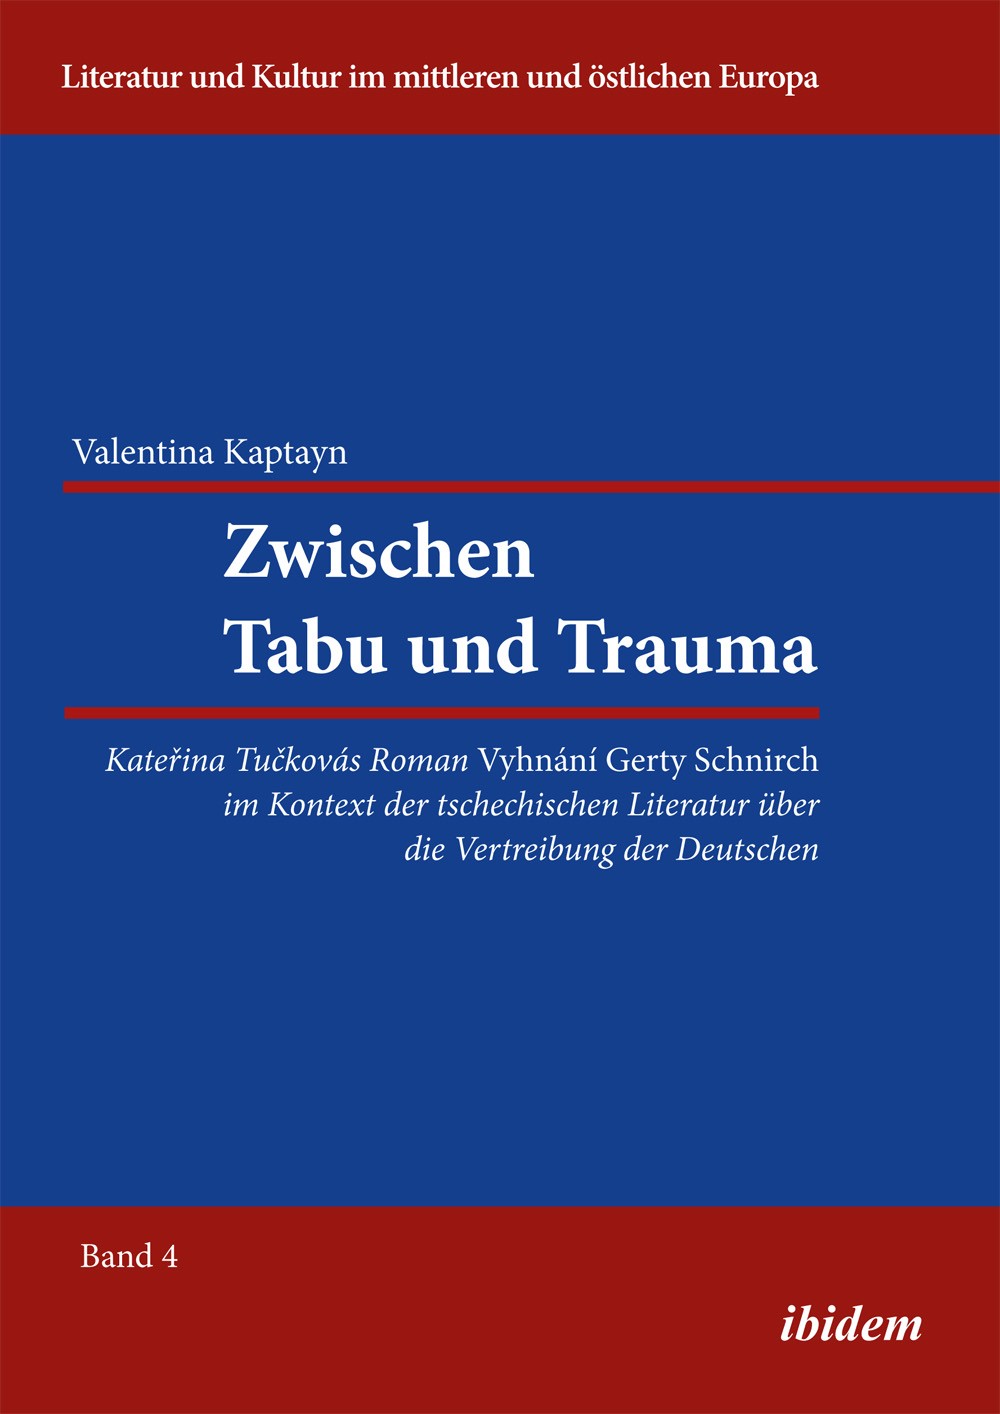 Zwischen Tabu und Trauma. Katerina Tuckovas Roman Vyhnani Gerty Schnirch im Kontext der tschechischen Literatur über die Vertreibung der Deutschen